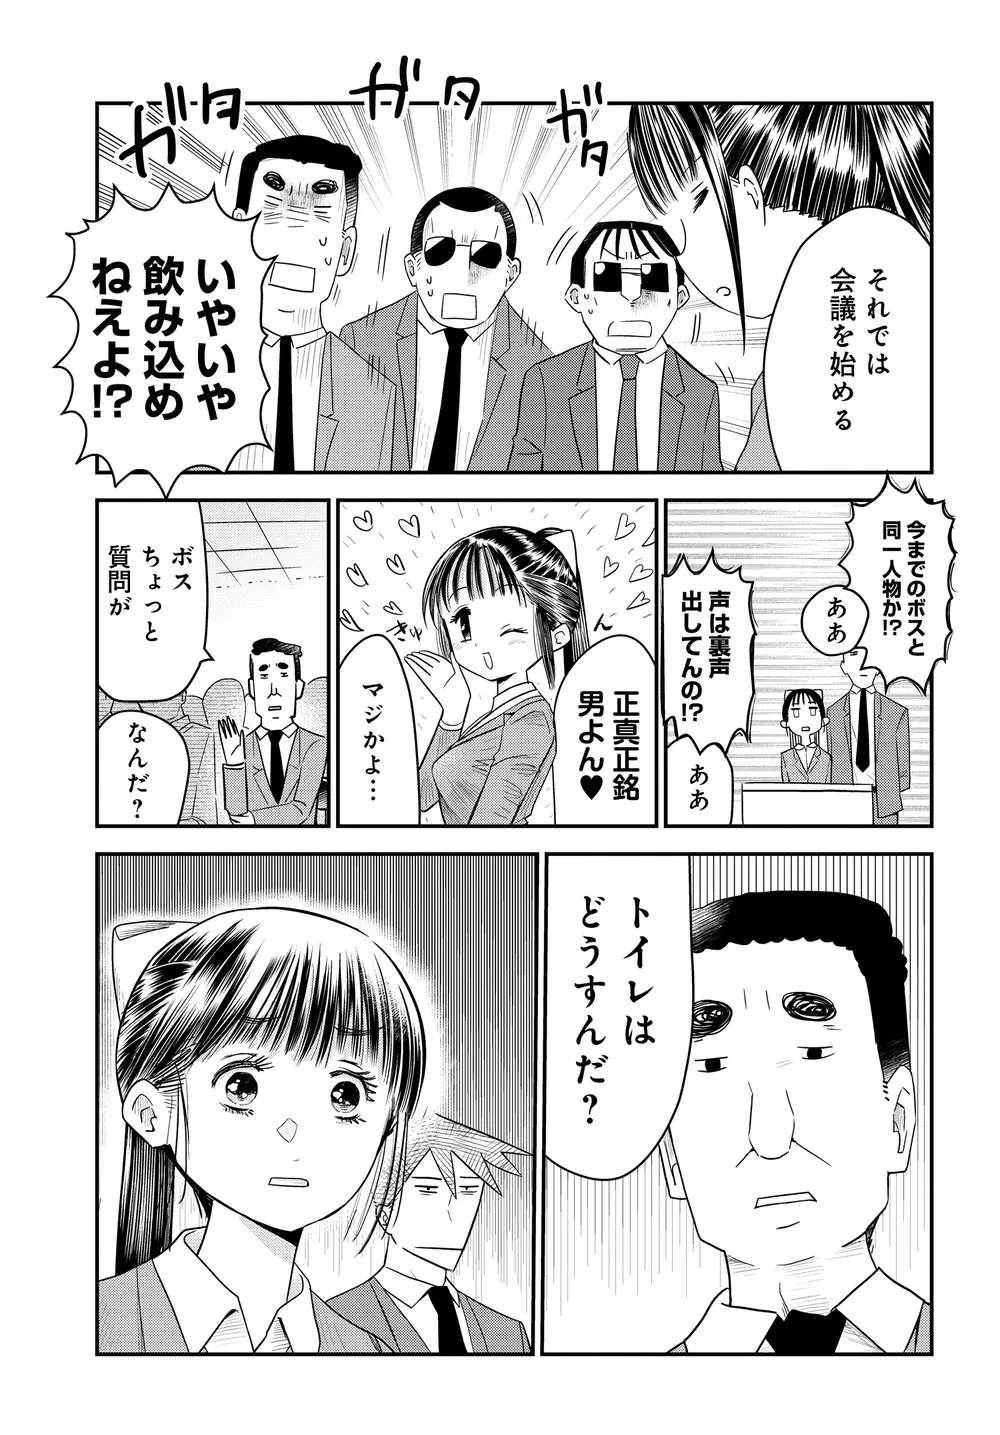 『美人すぎる女装刑事 藤堂さん』(26/39)